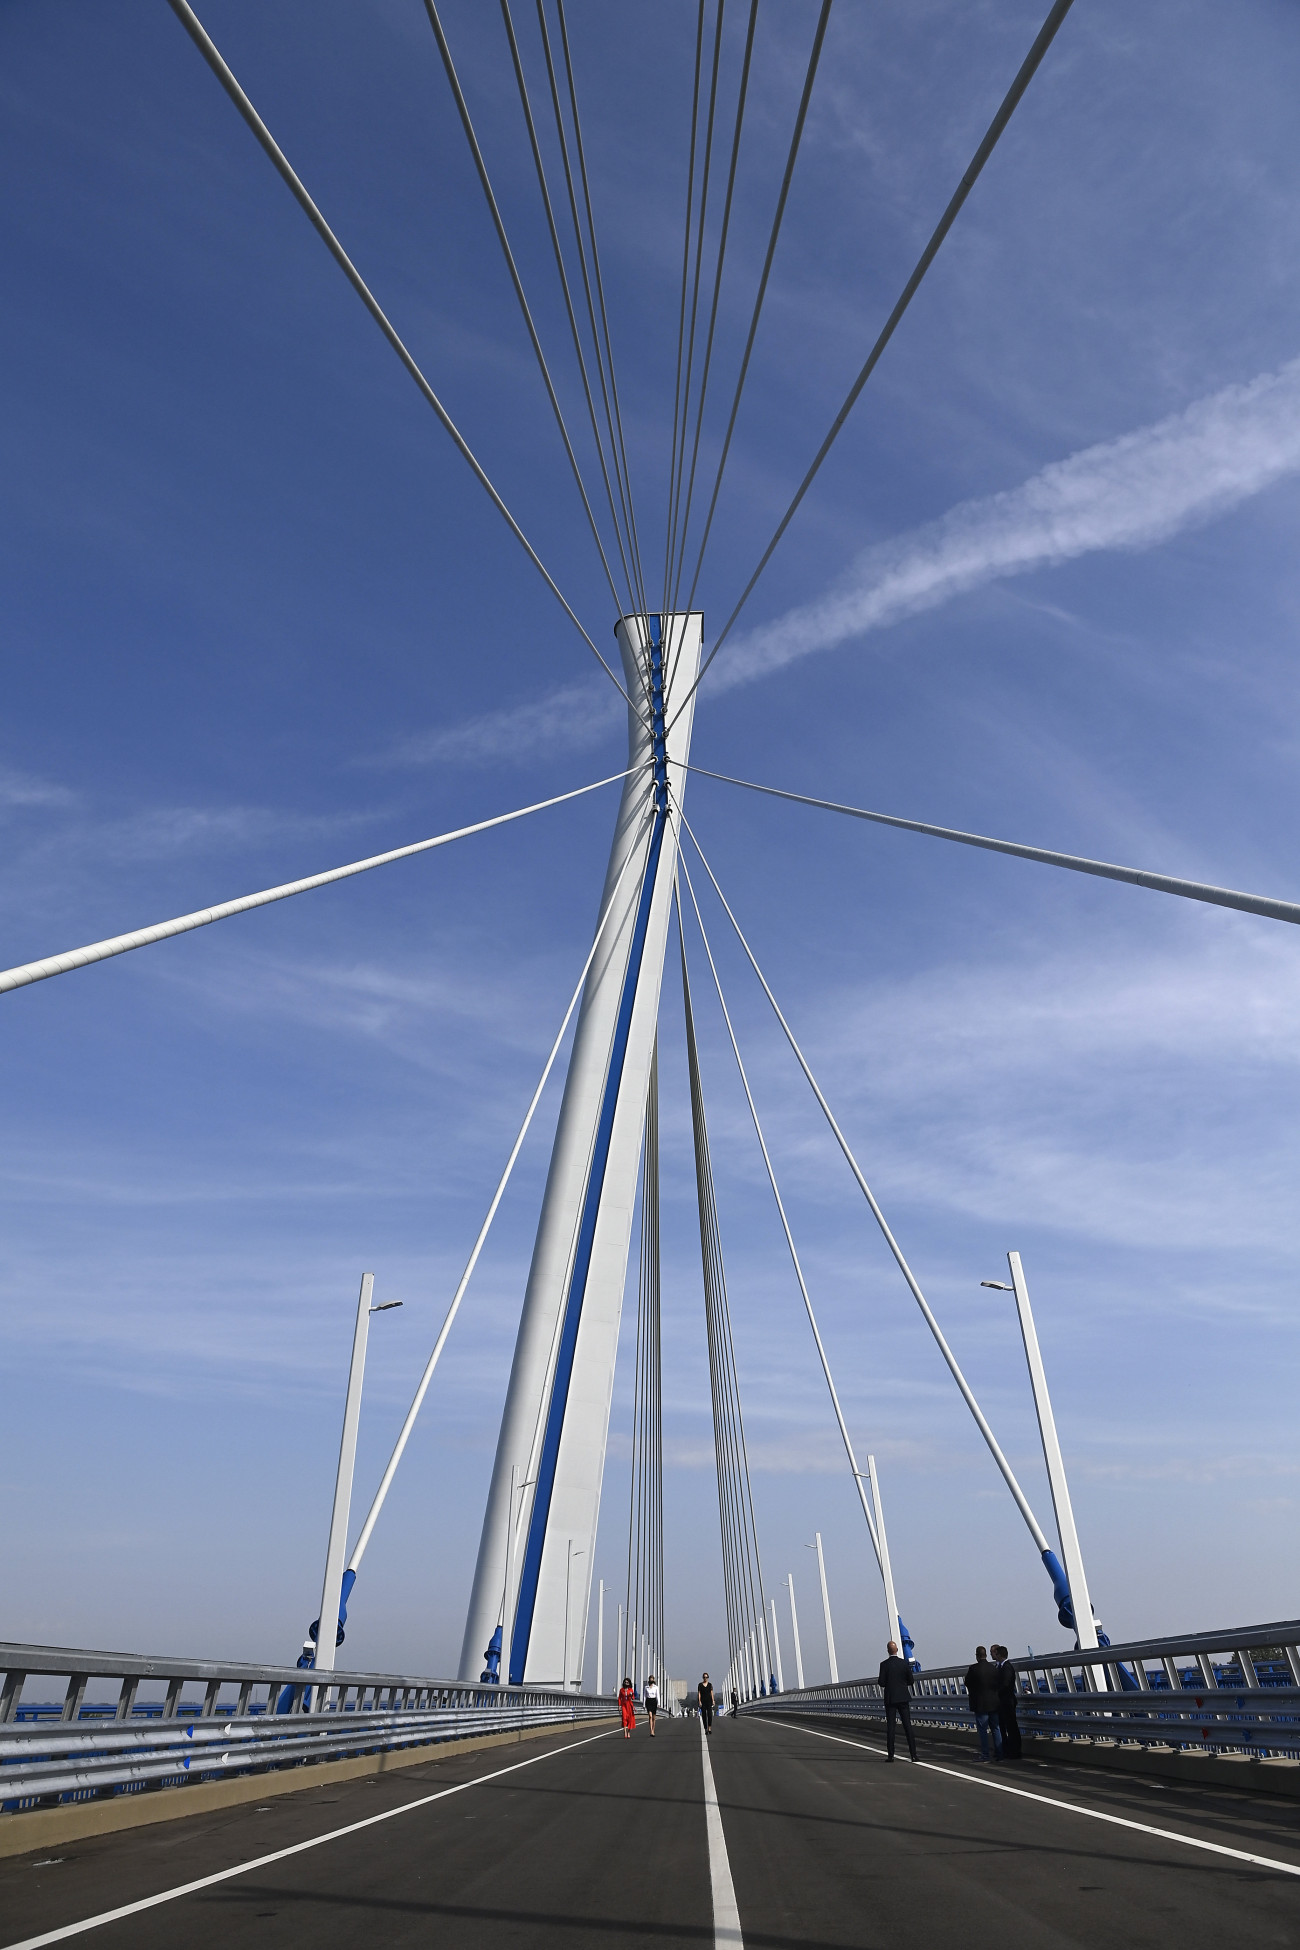 Komárom, 2020. szeptember 17.
Az új komáromi Duna-híd (Monostori híd) az avatás előtt 2020. szeptember 17-én.
MTI/Koszticsák Szilárd